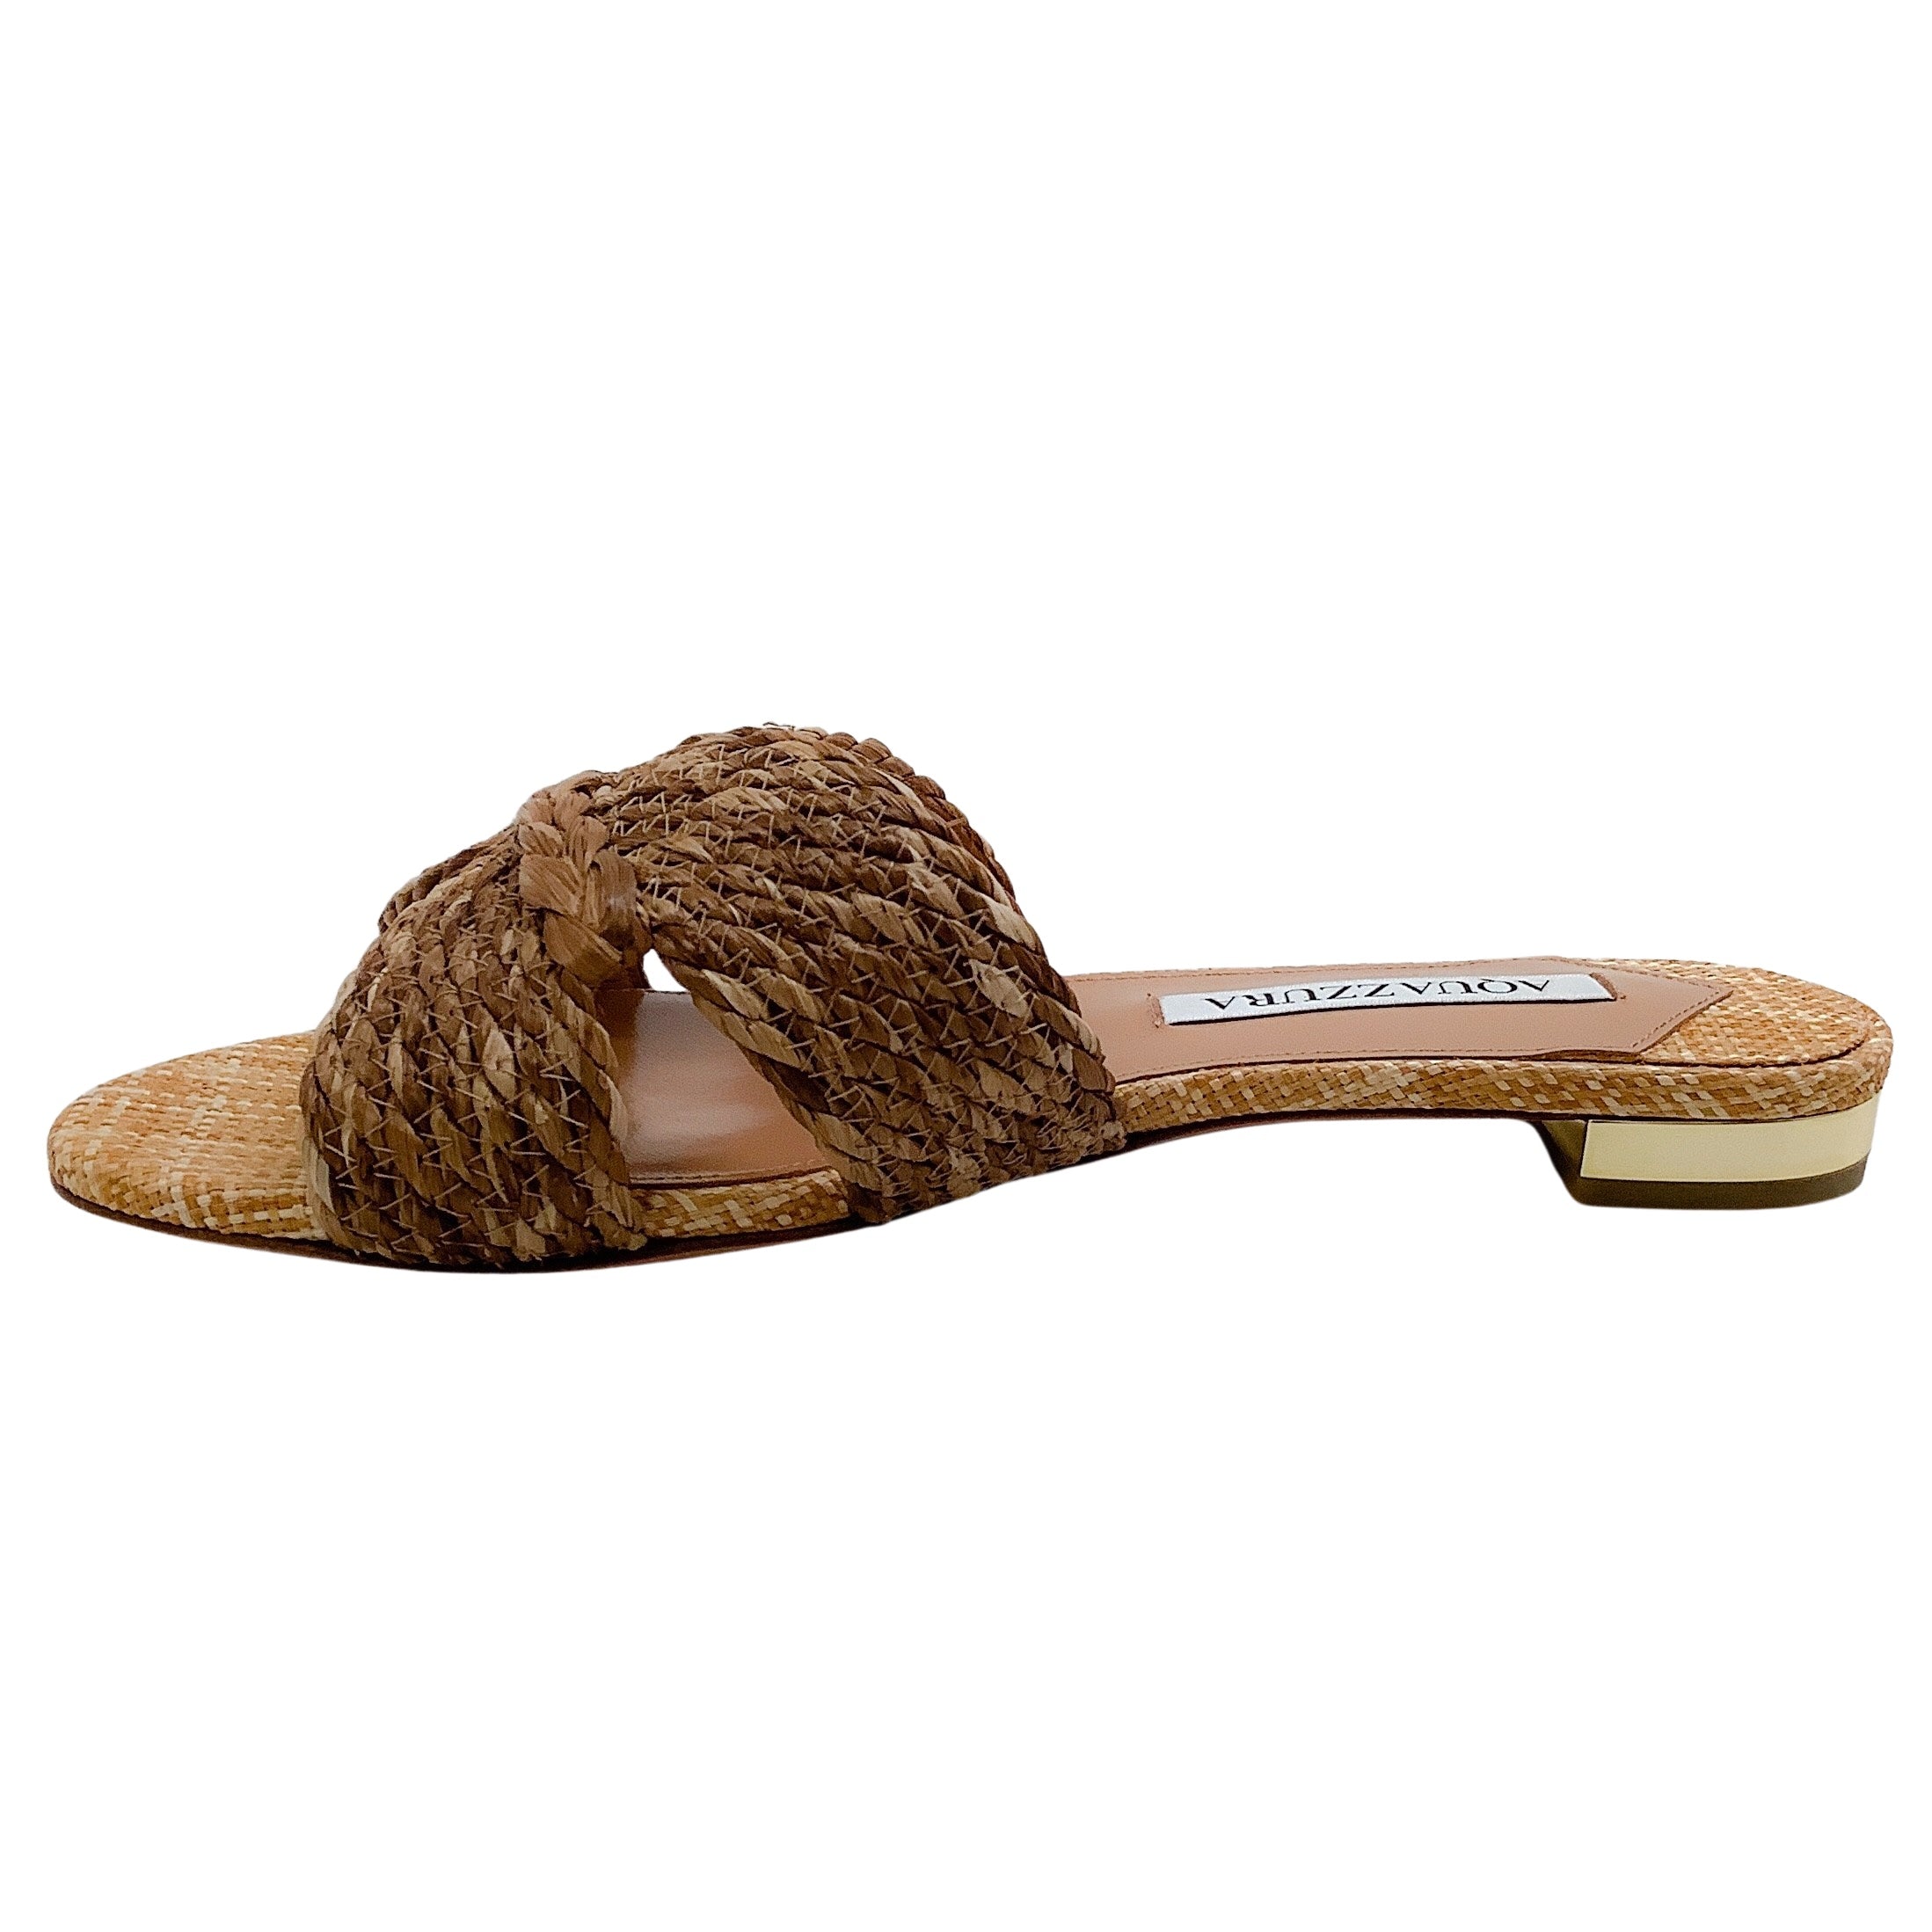 Aquazzura Natural Woven Raffia Rope Flat Sandals